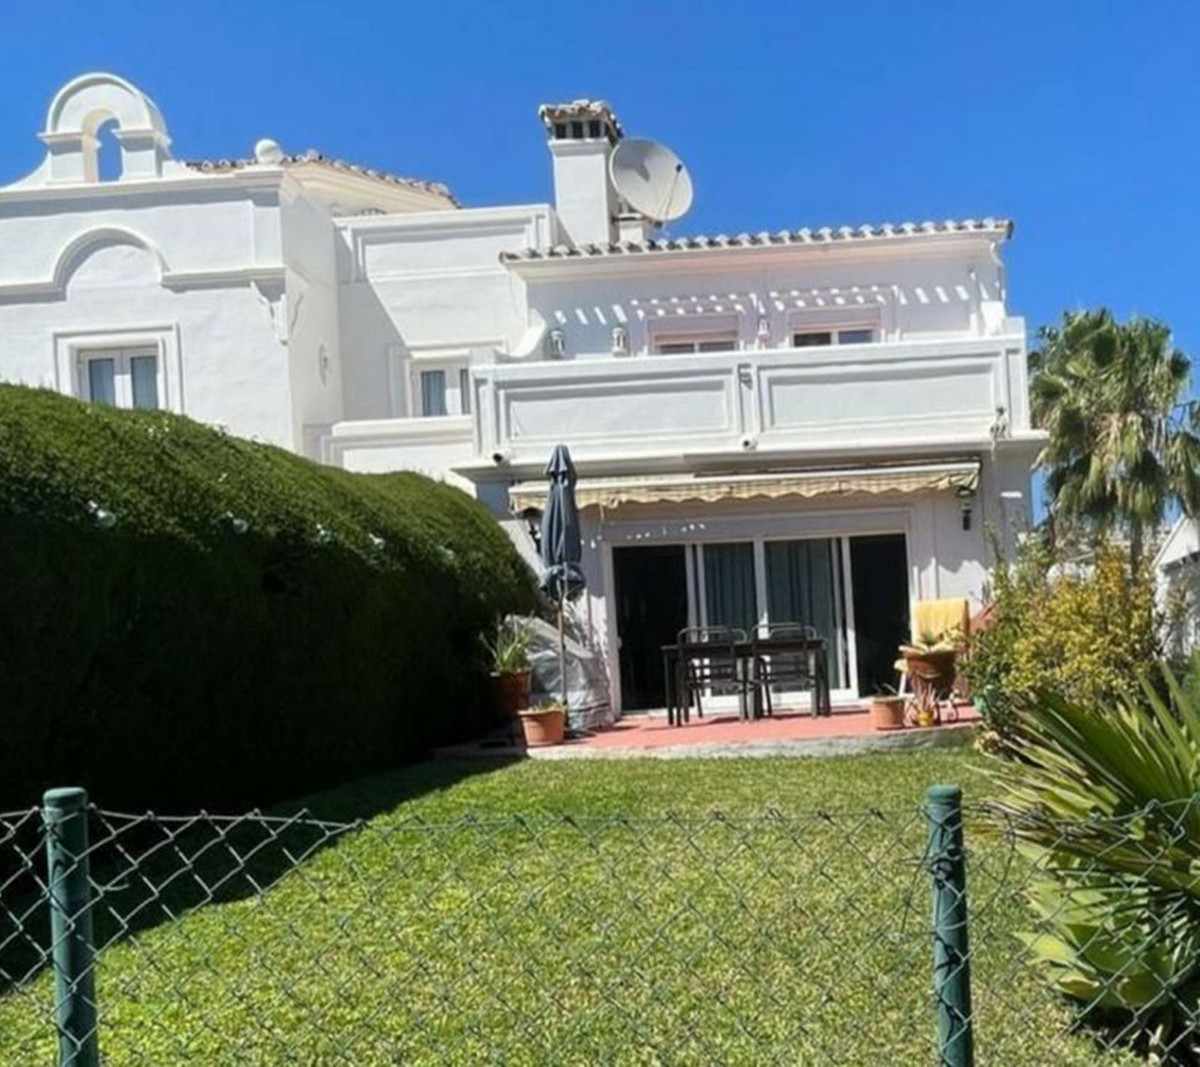 						Villa  Pareada
													en venta 
																			 en Calahonda
					